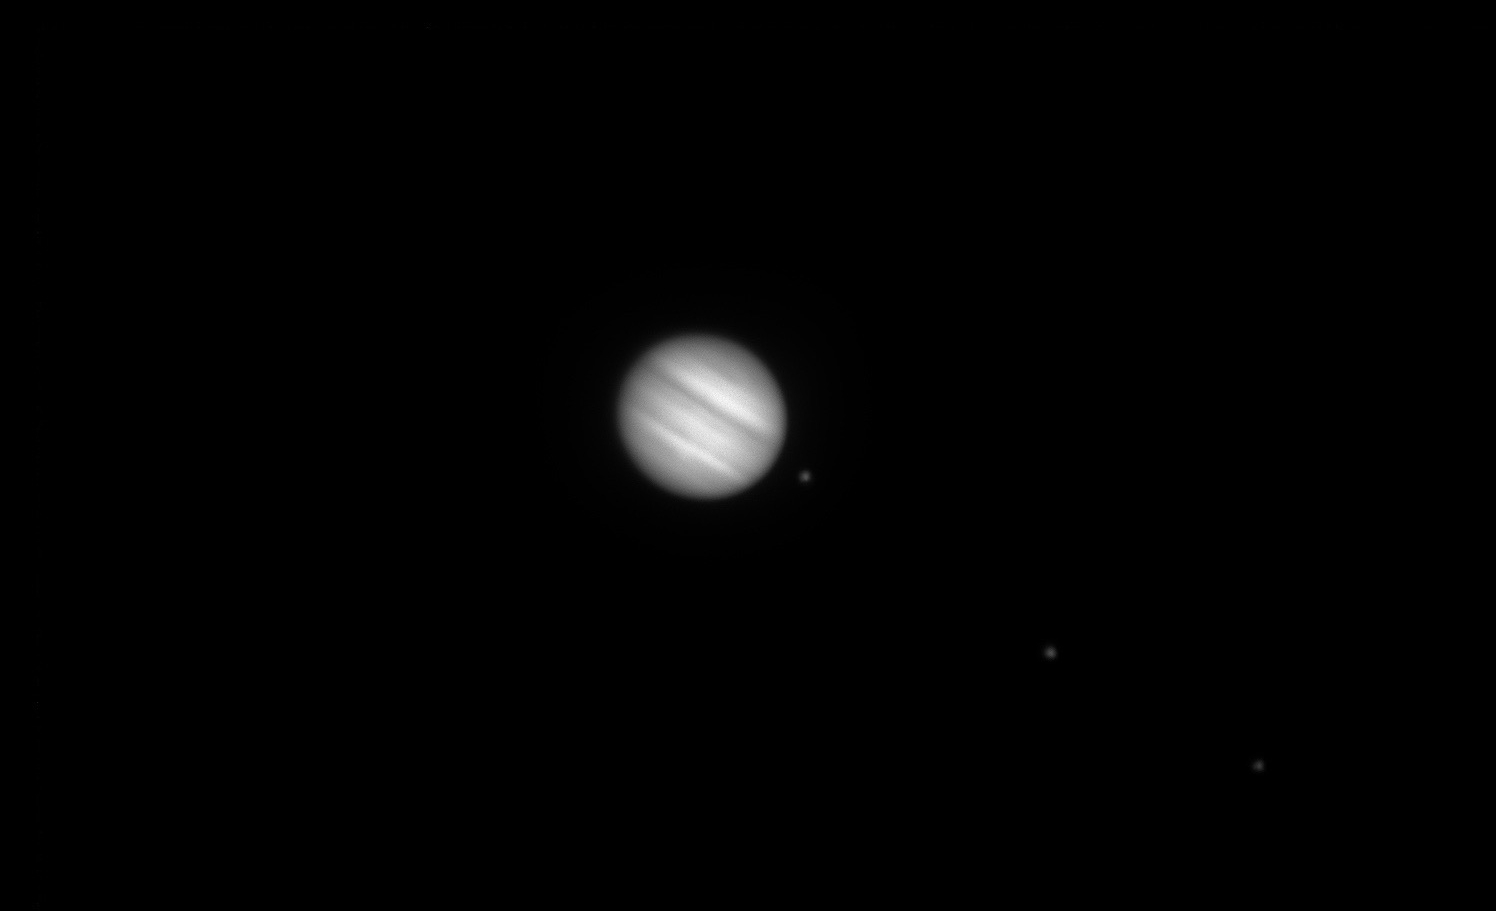 La planète Jupiter accompagnée des satellites Io, Europe et Ganymède